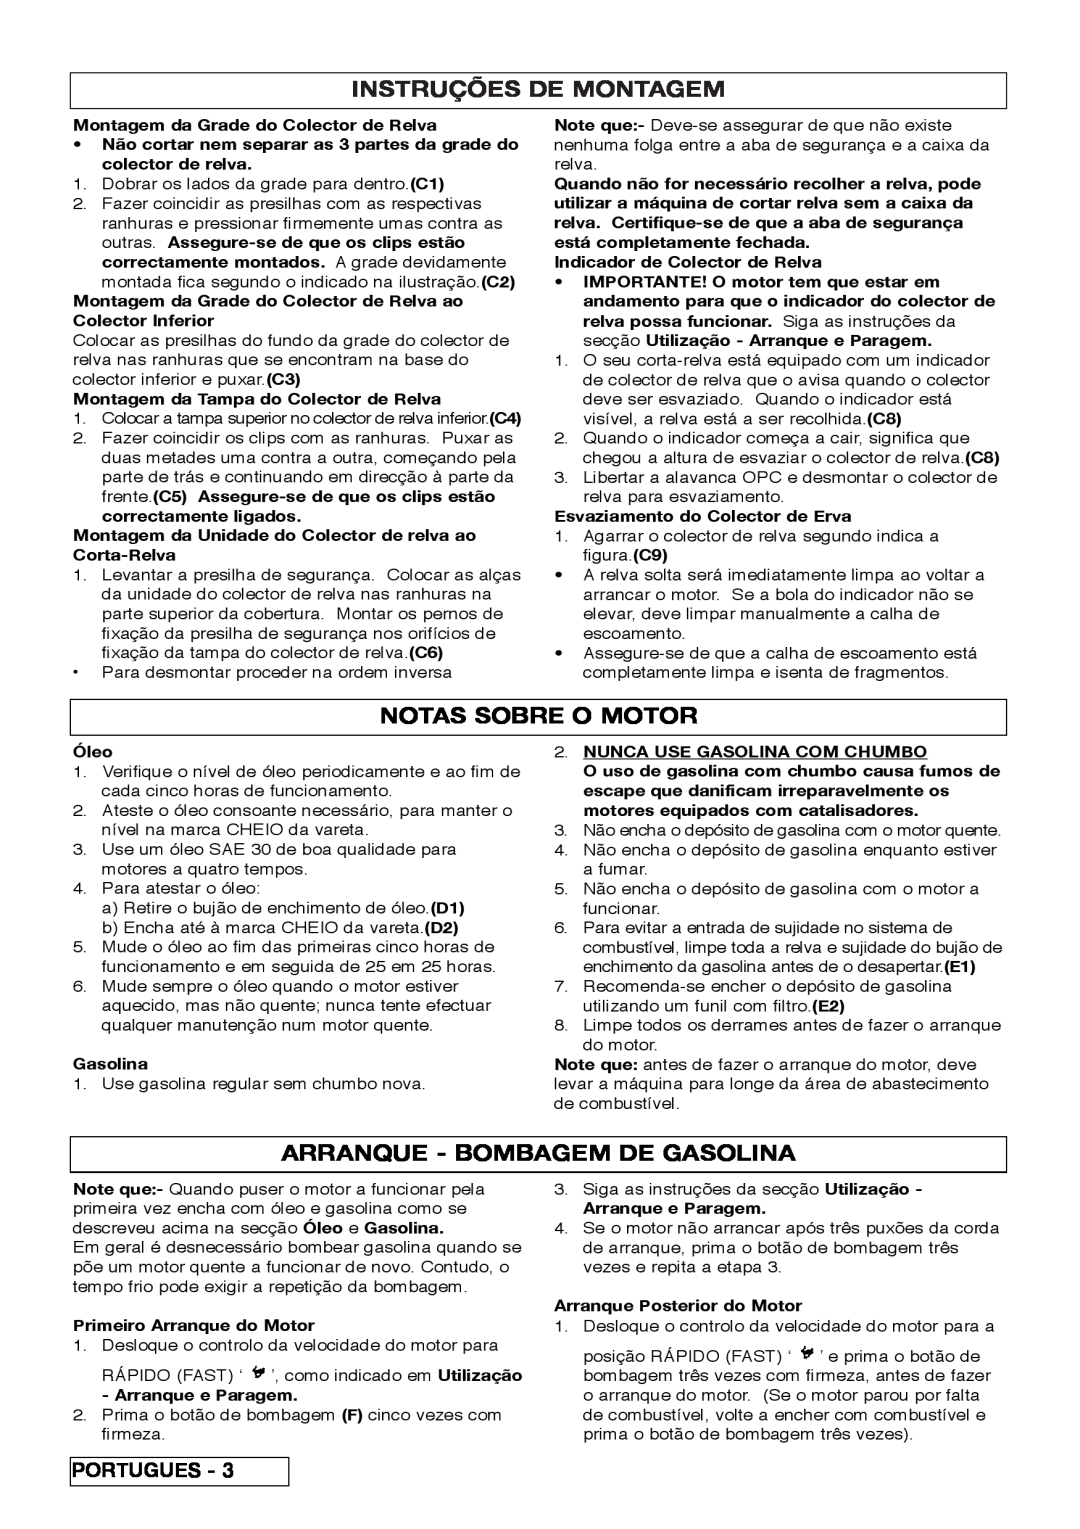 Husqvarna R 43SE manual Instruções De Montagem, Notas Sobre O Motor, Arranque - Bombagem De Gasolina 